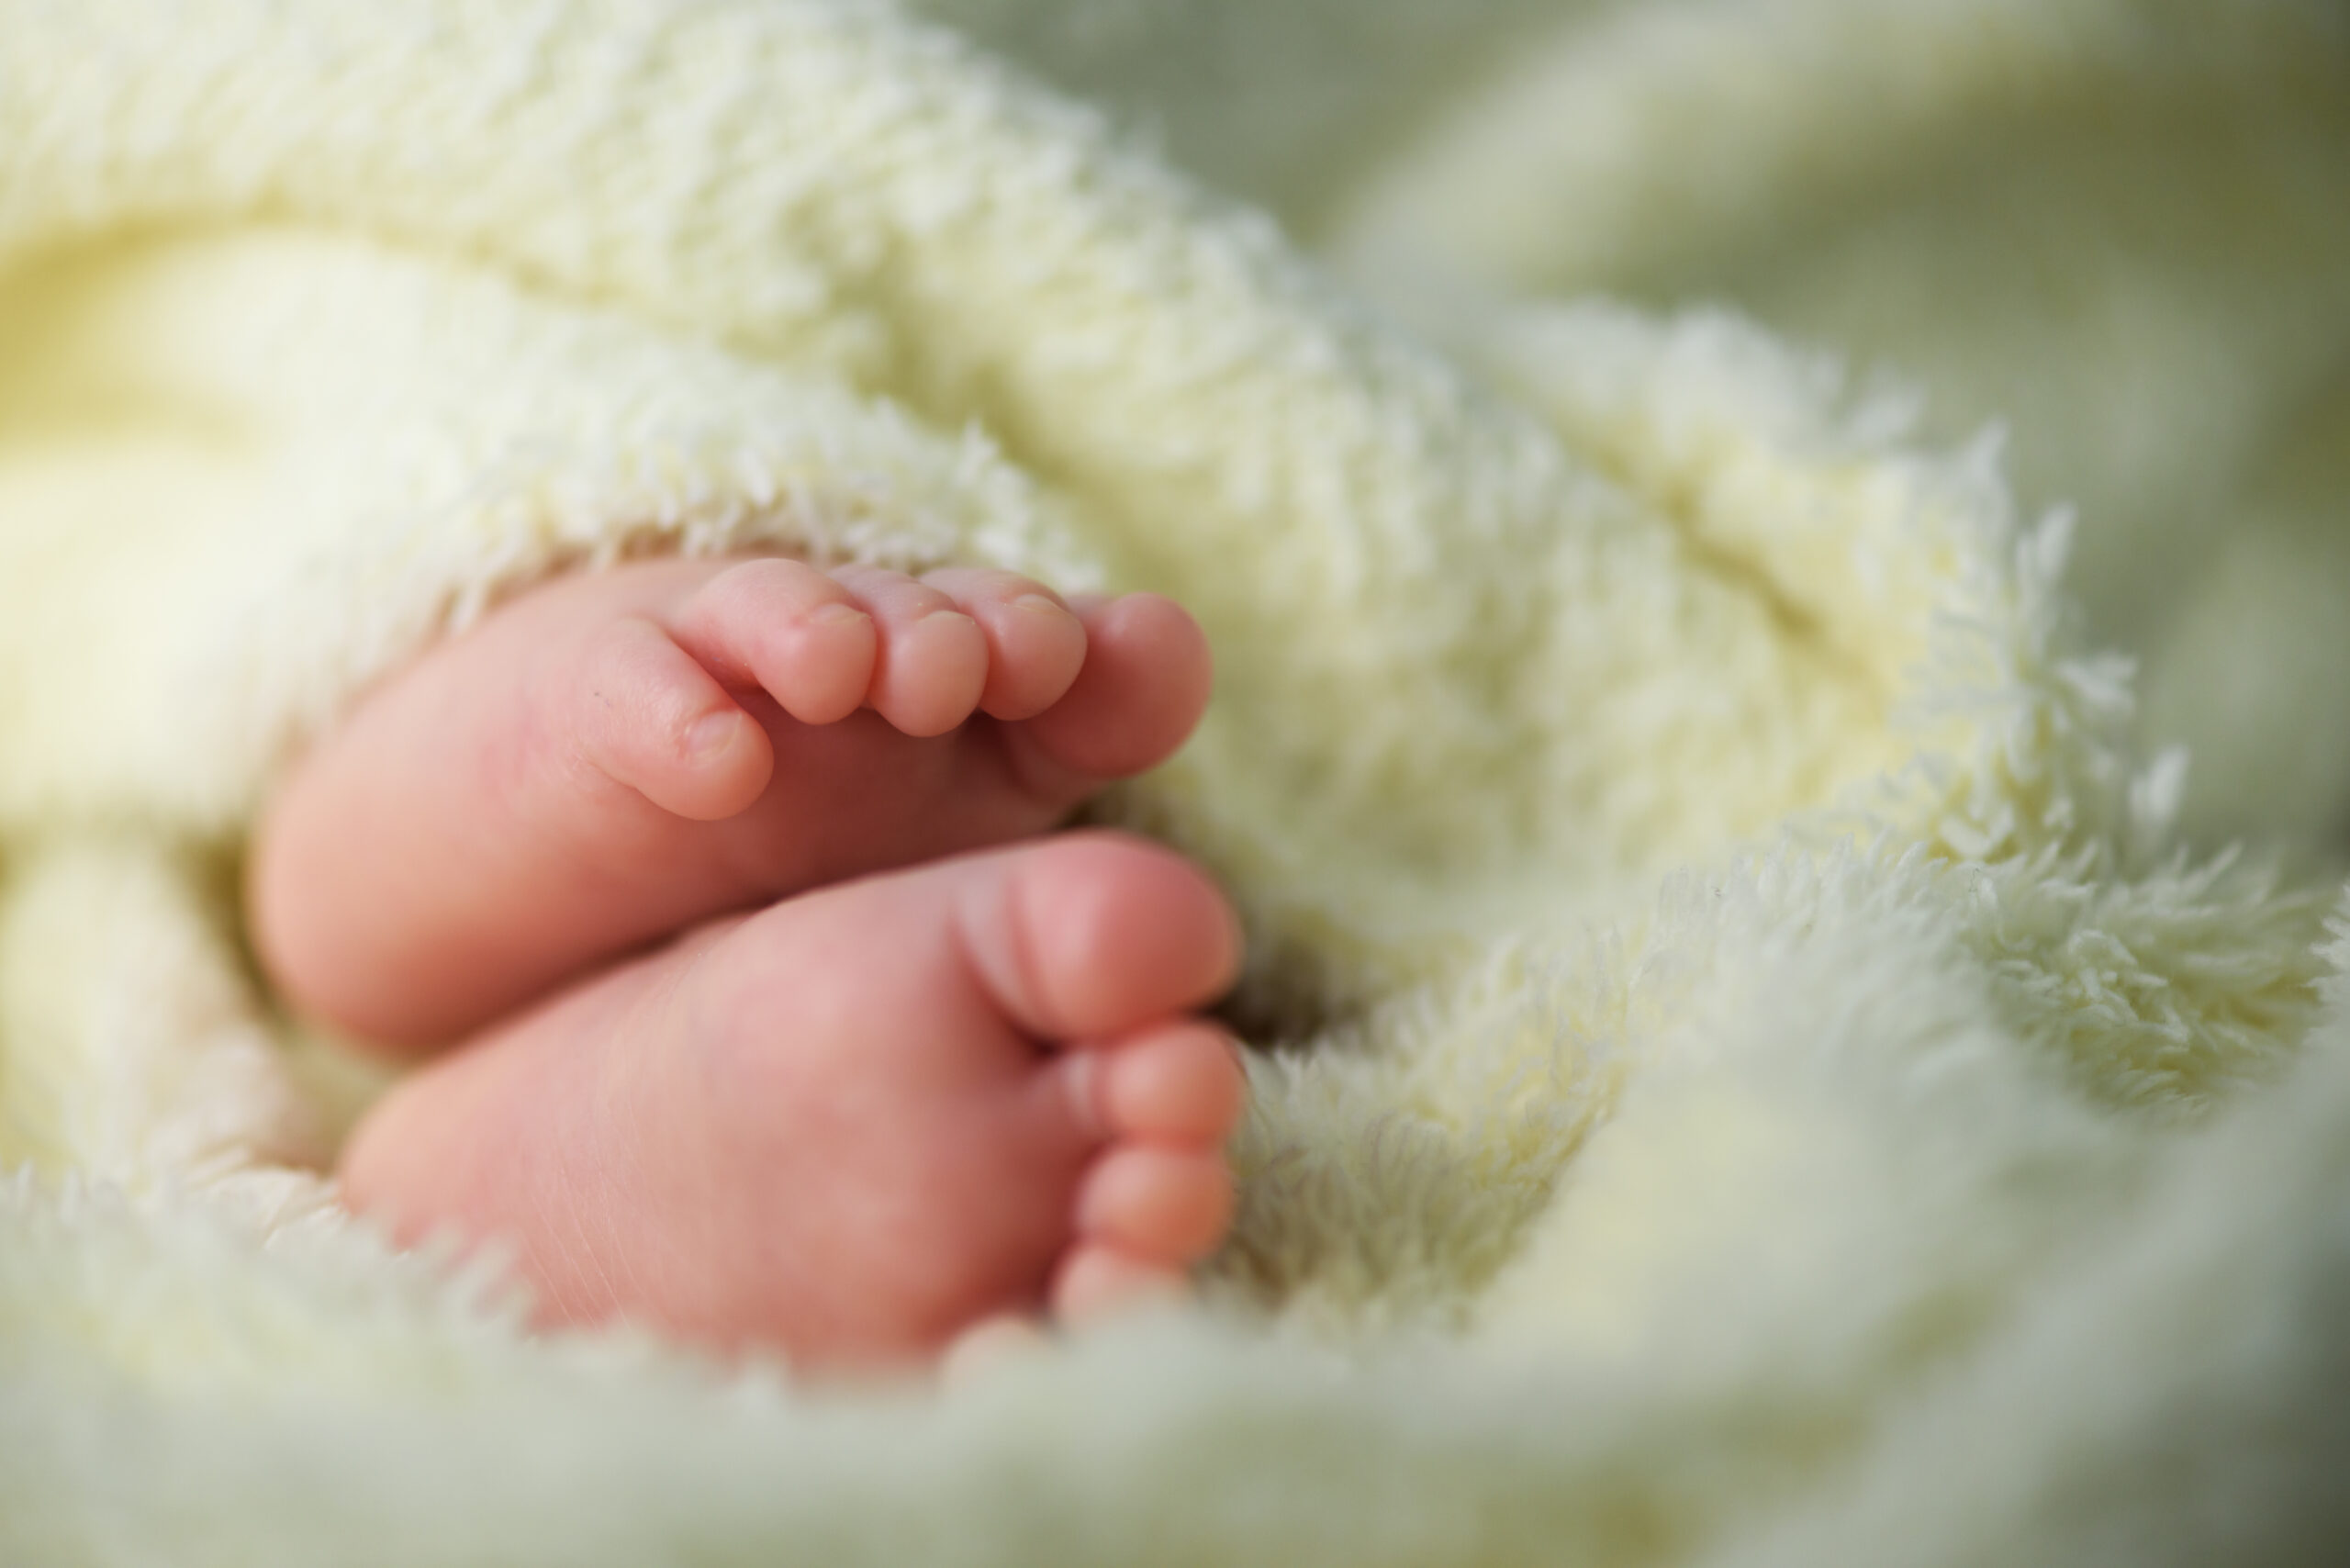 newborn baby feet in a fluffy blanket 2021 08 26 17 02 10 utc scaled